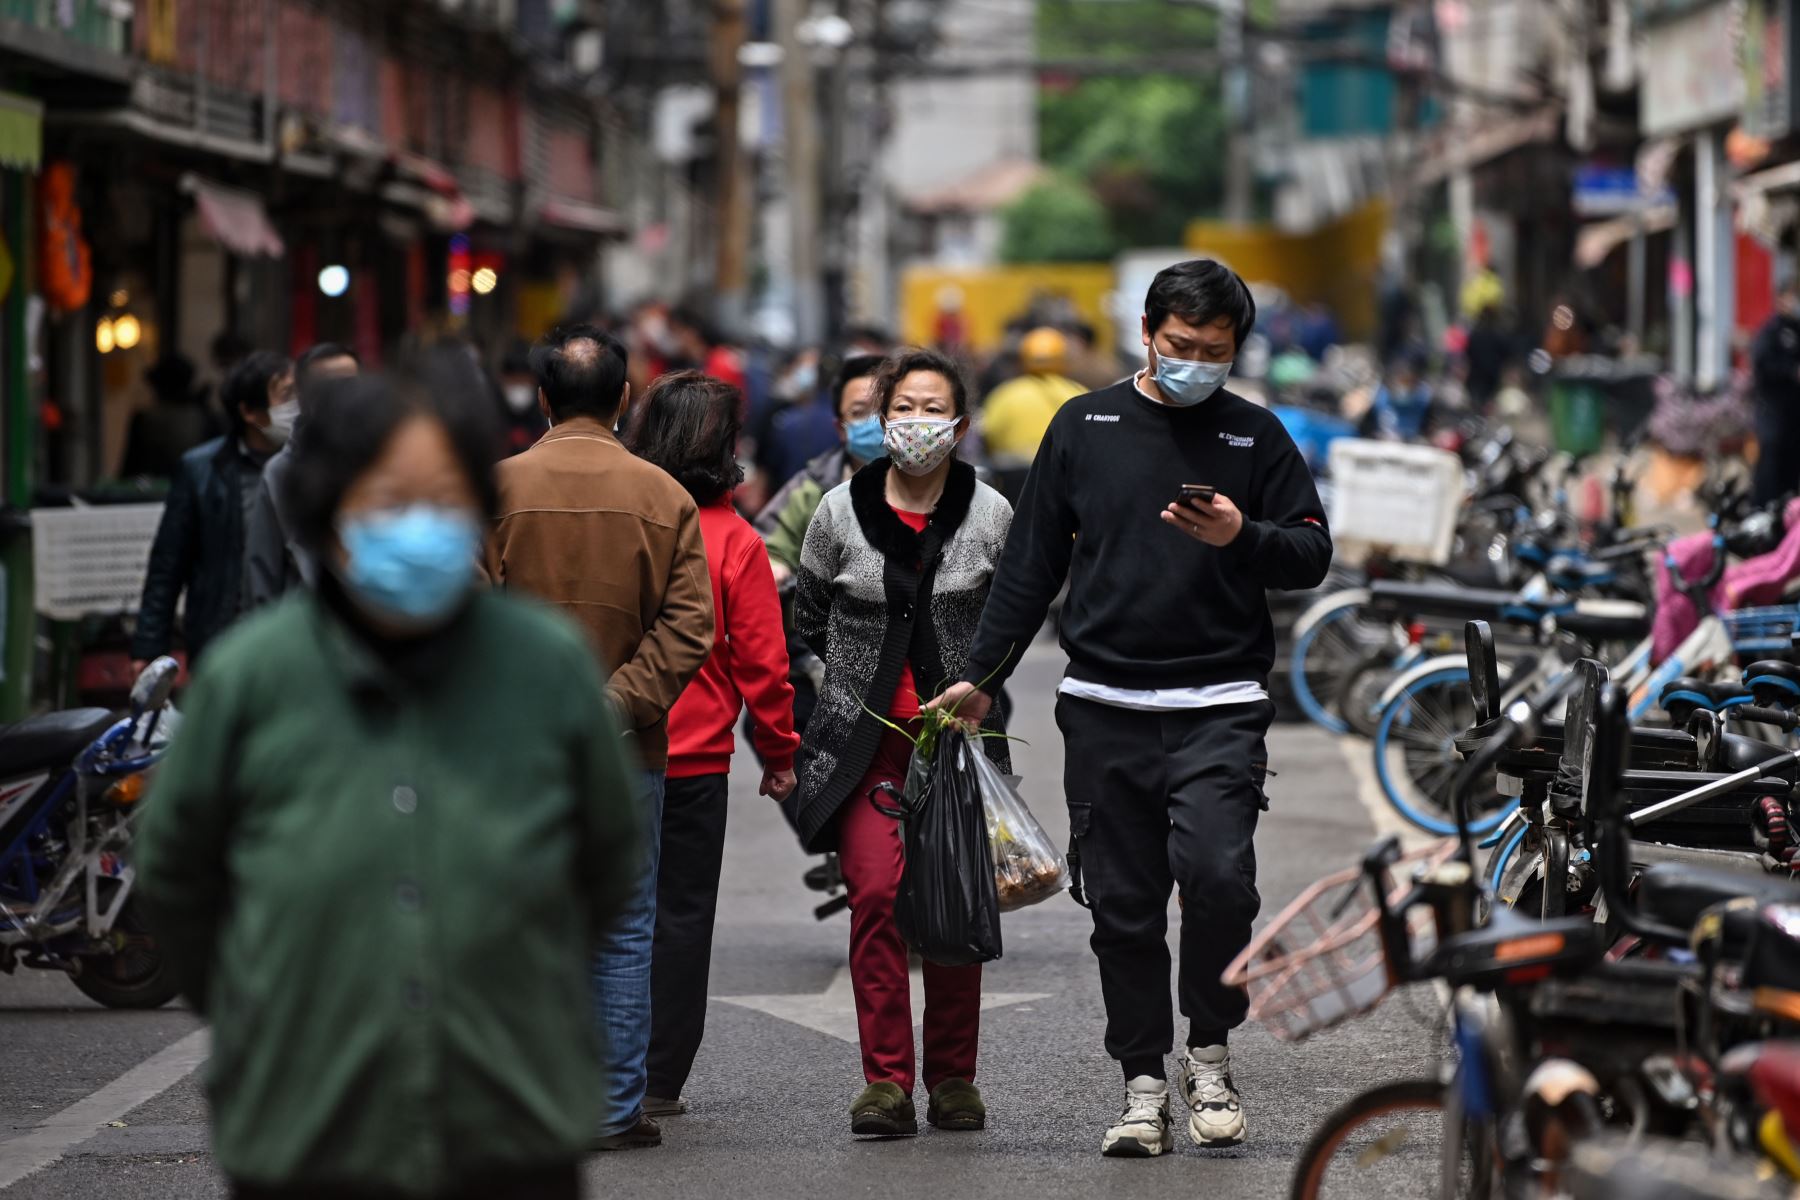 Las personas con máscaras faciales caminan por una calle en Wuhan, la provincia central china de Hubei.
Foto: AFP